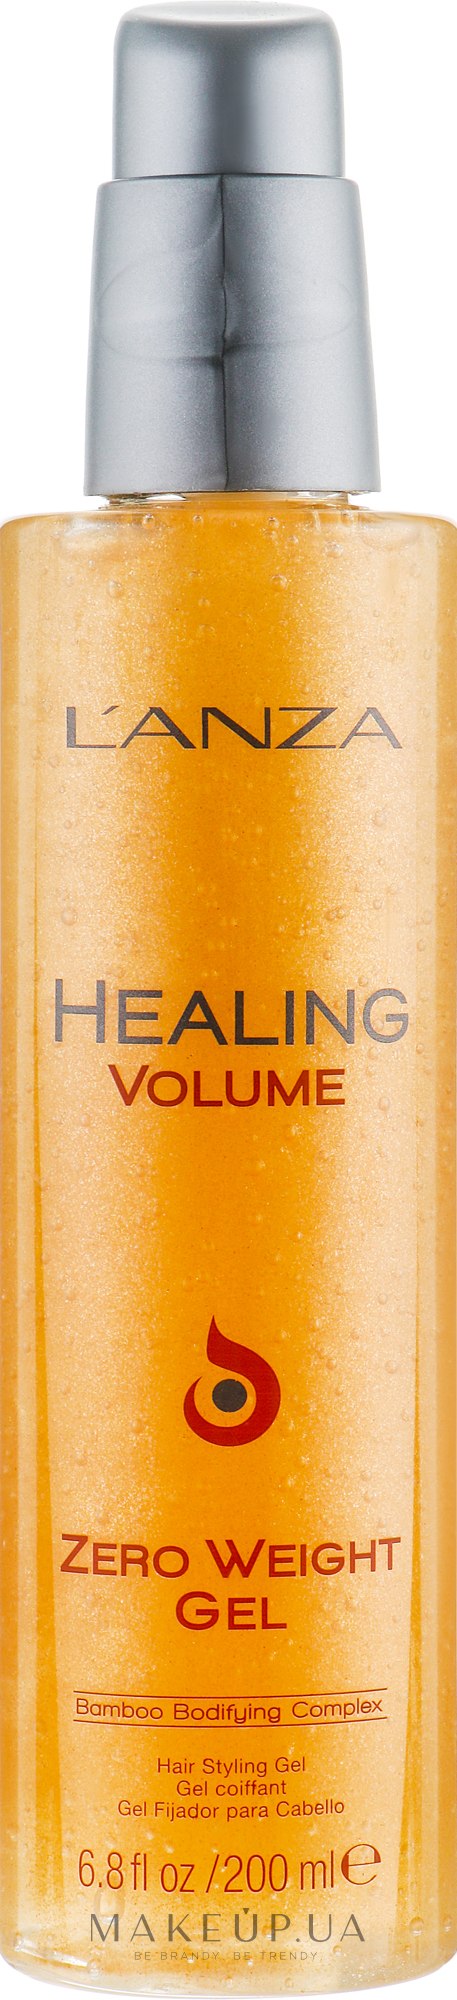 Легкий гель із світловідбивальними часточками - L'anza Healing Volume Zero Weight Gel — фото 200ml